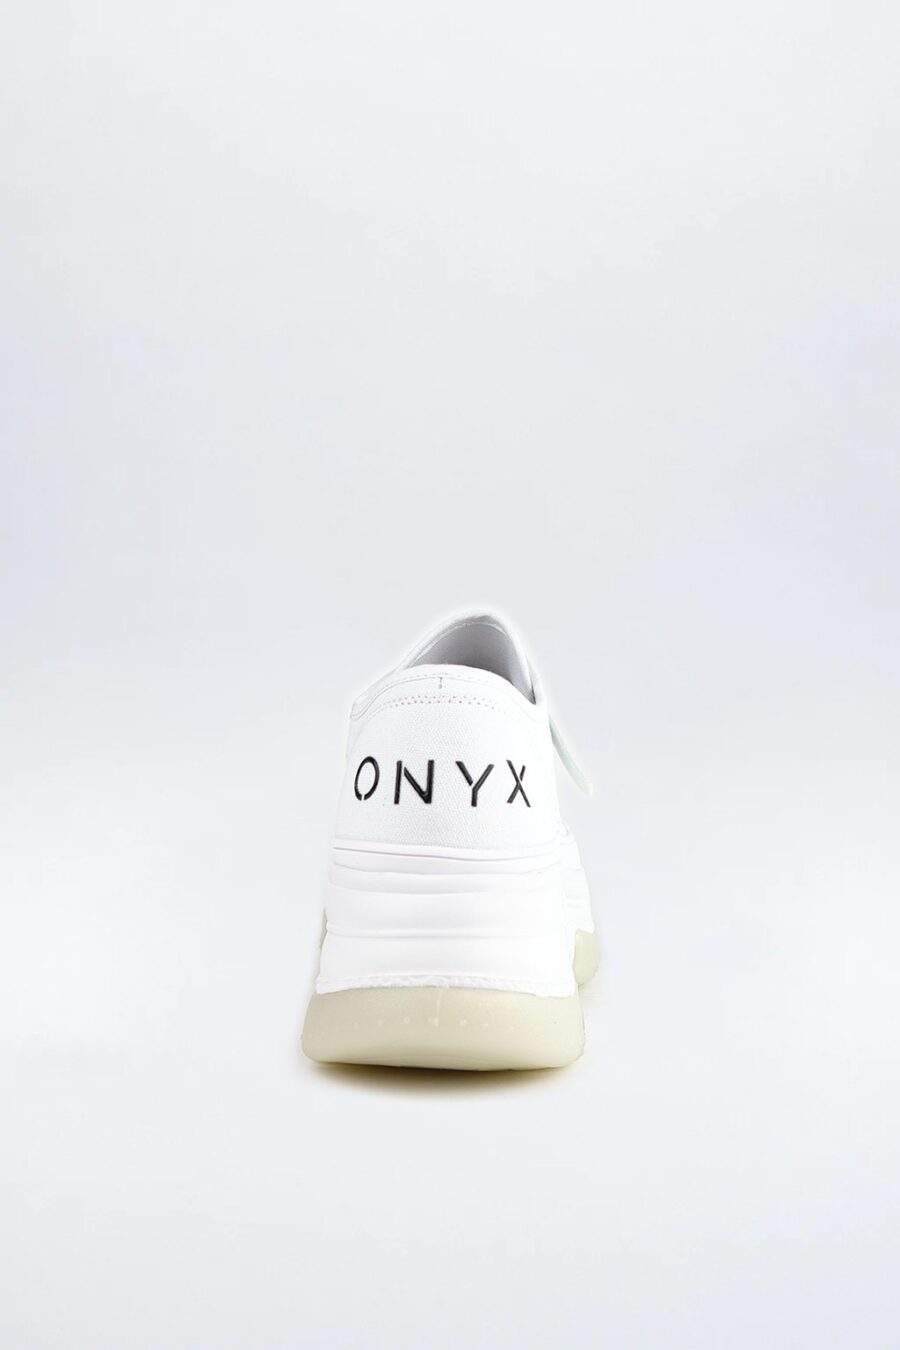 OX 010 White